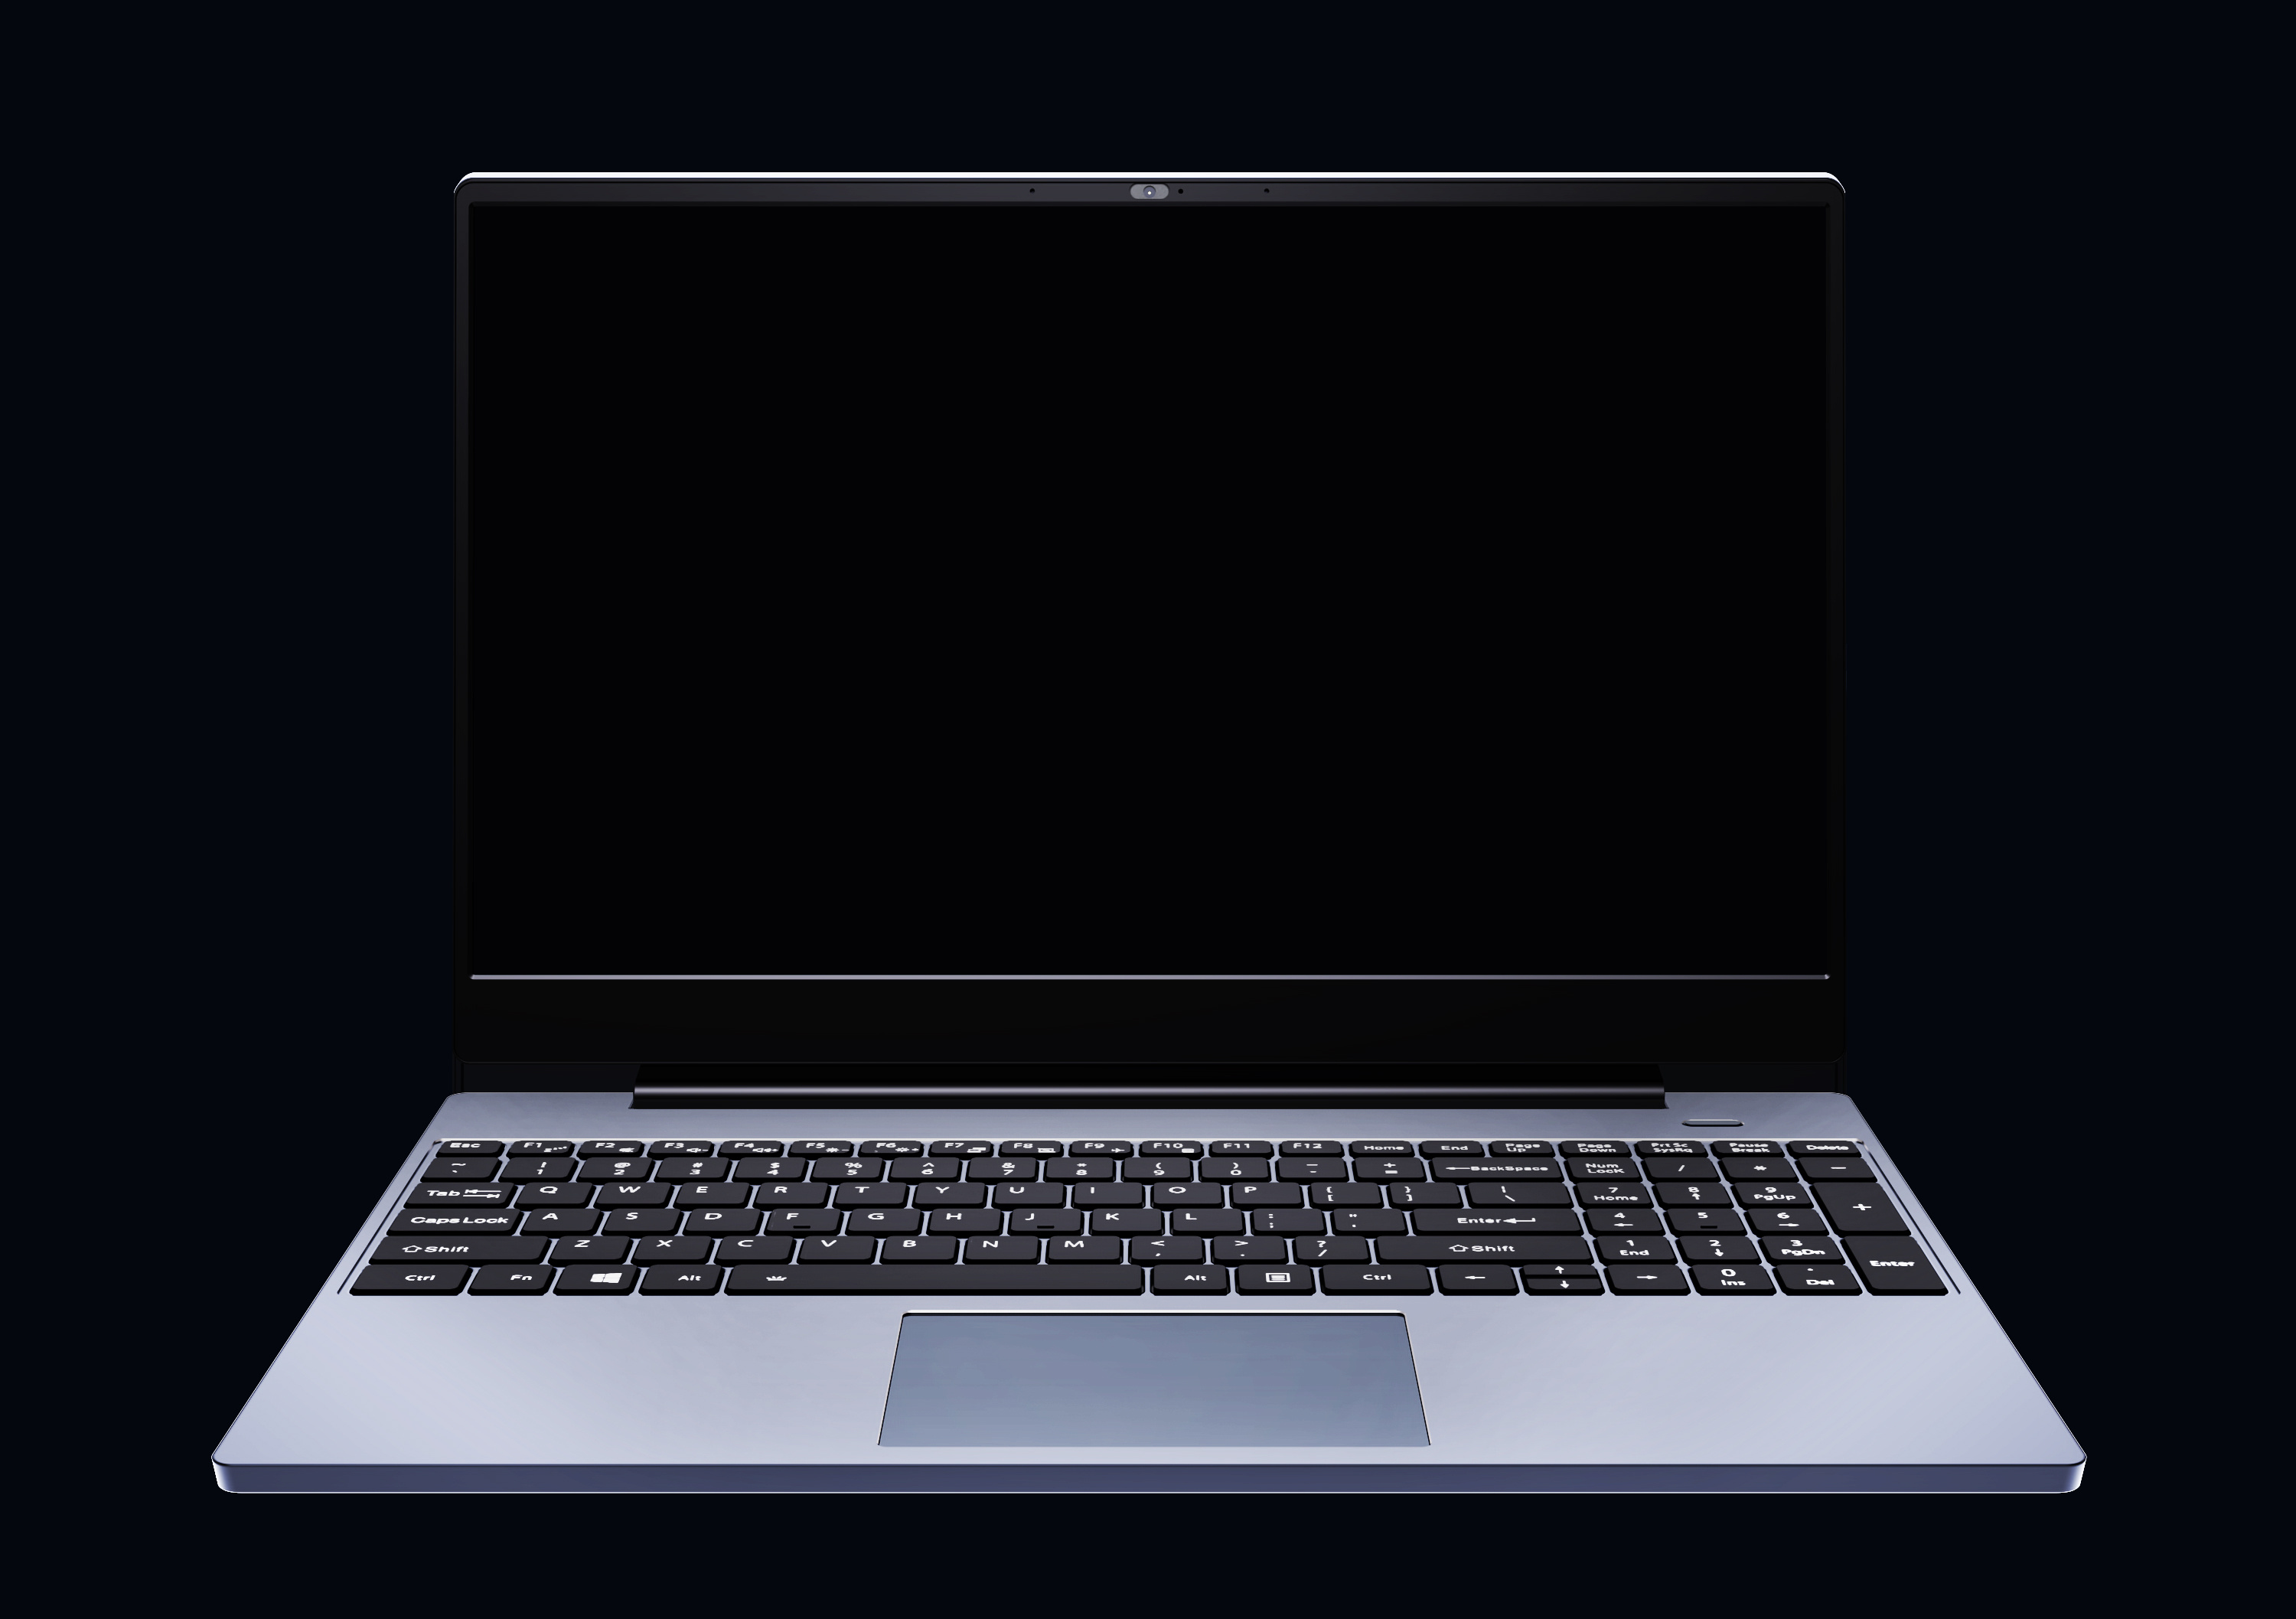 笔记本电脑多视角展示样机效果图14×9 Screen Mock-Up – Space Gray-设计石代